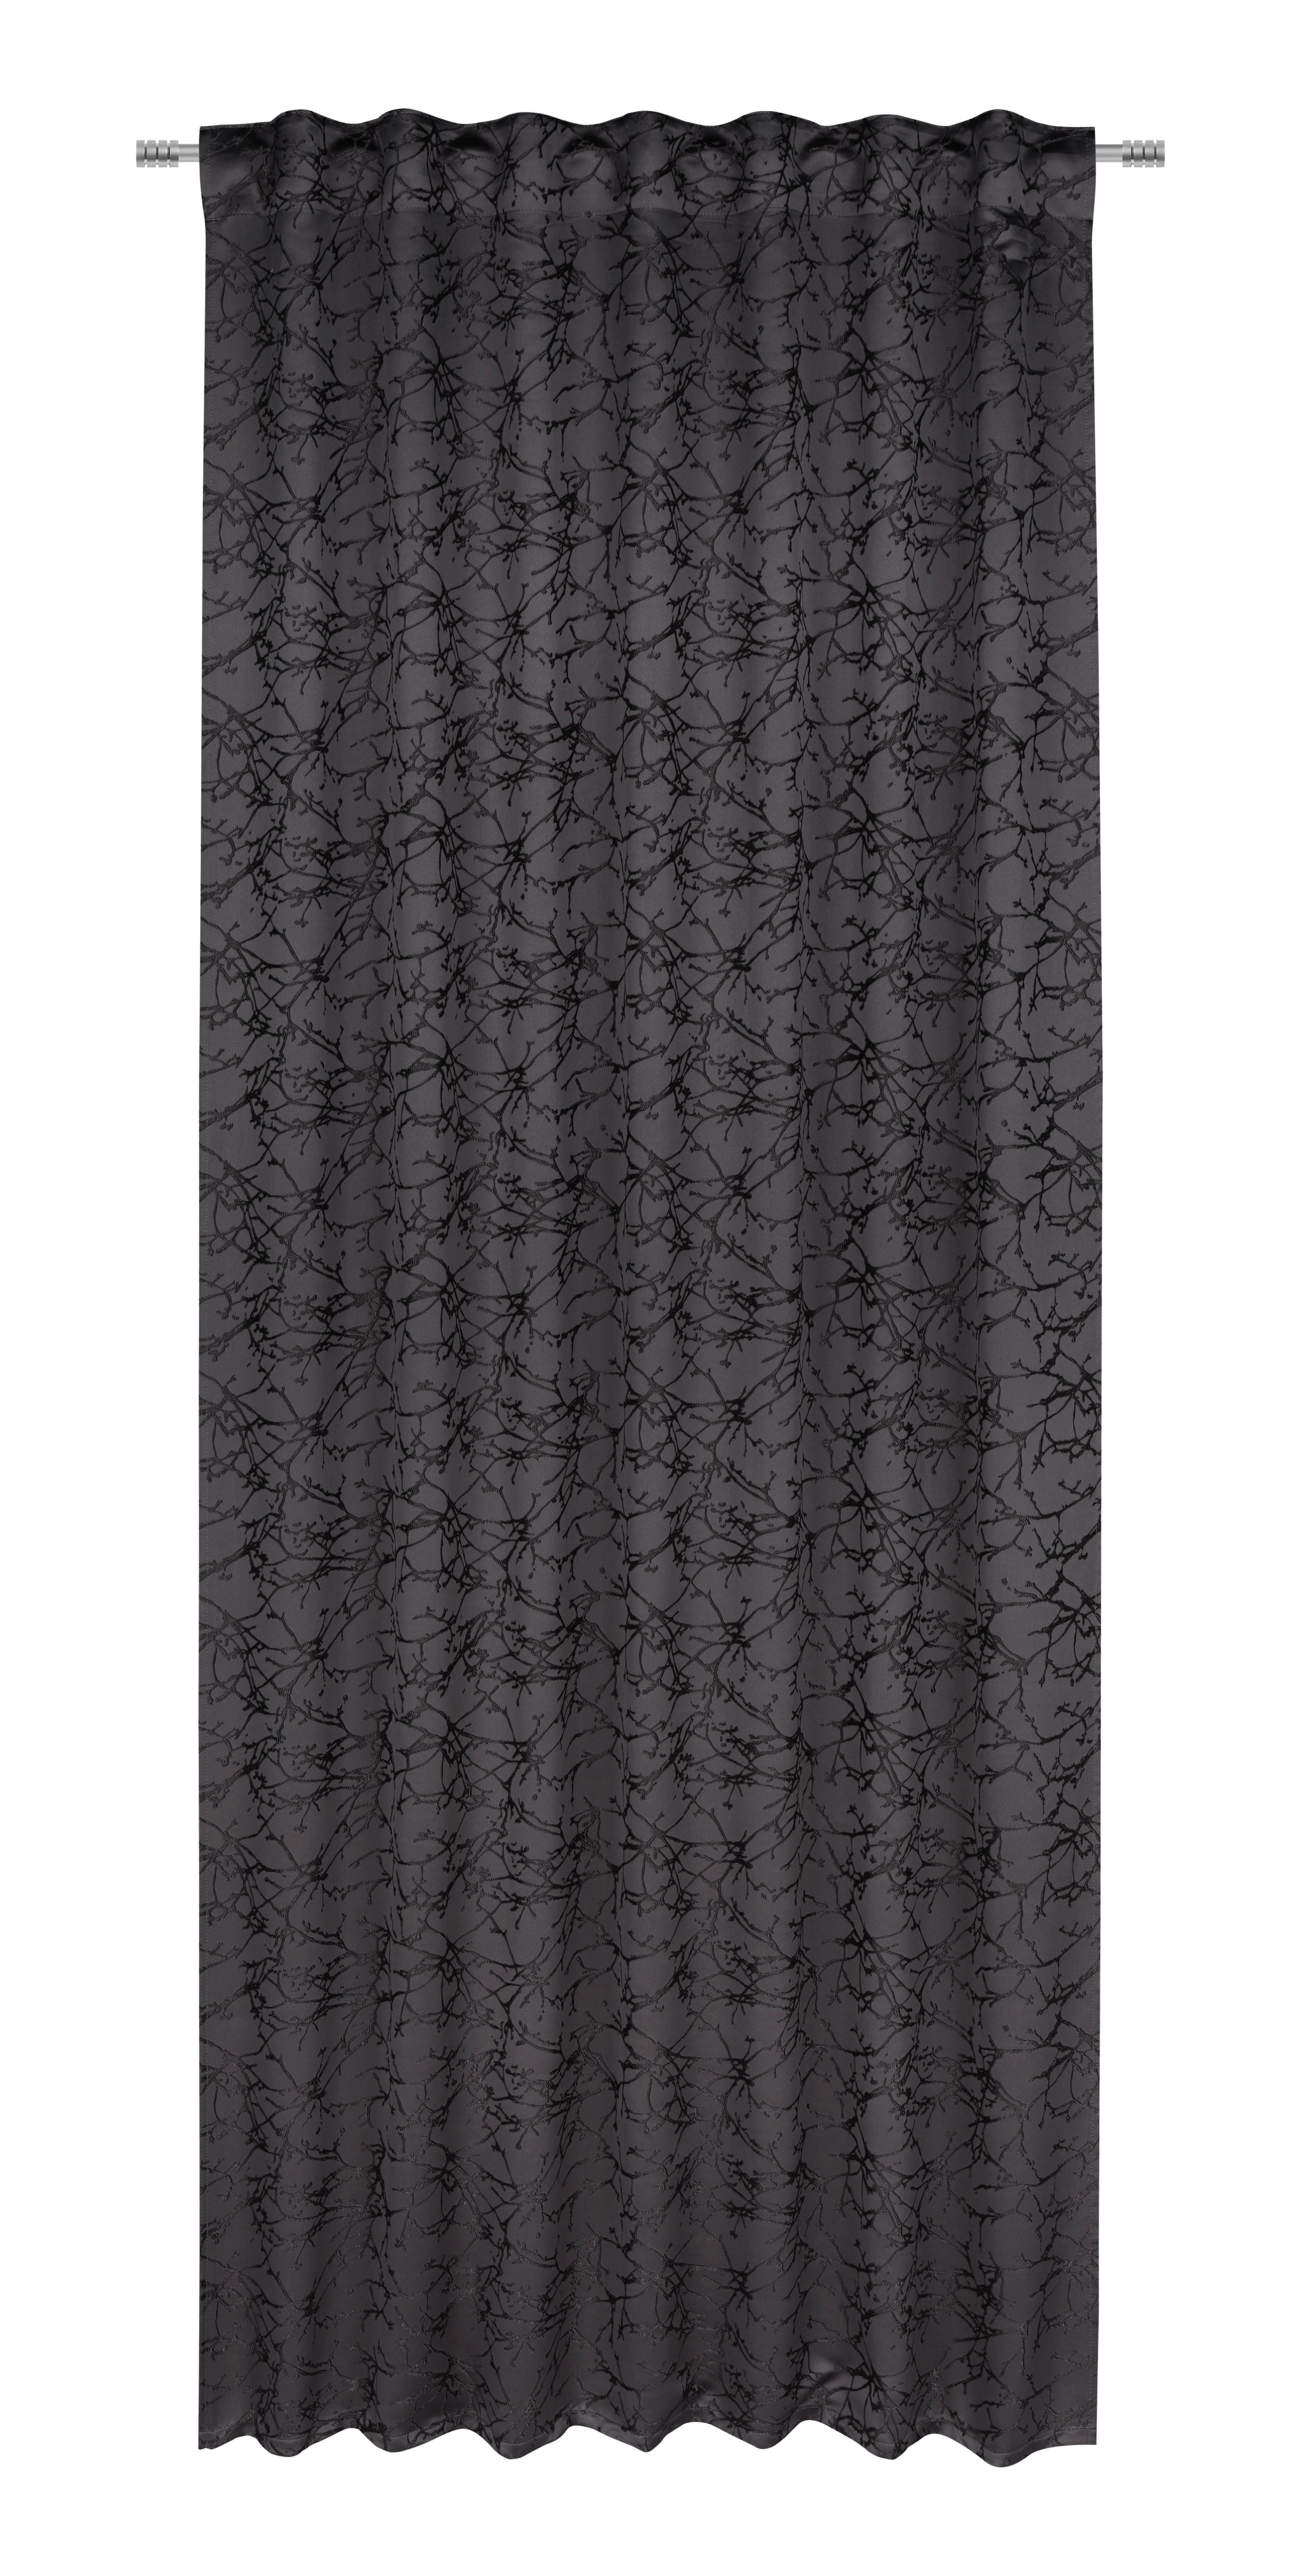 Vorhang Mit Schlaufen und Band Sibel 140x245 cm Anthrazit - Anthrazit, ROMANTIK / LANDHAUS, Textil (140/245cm) - James Wood